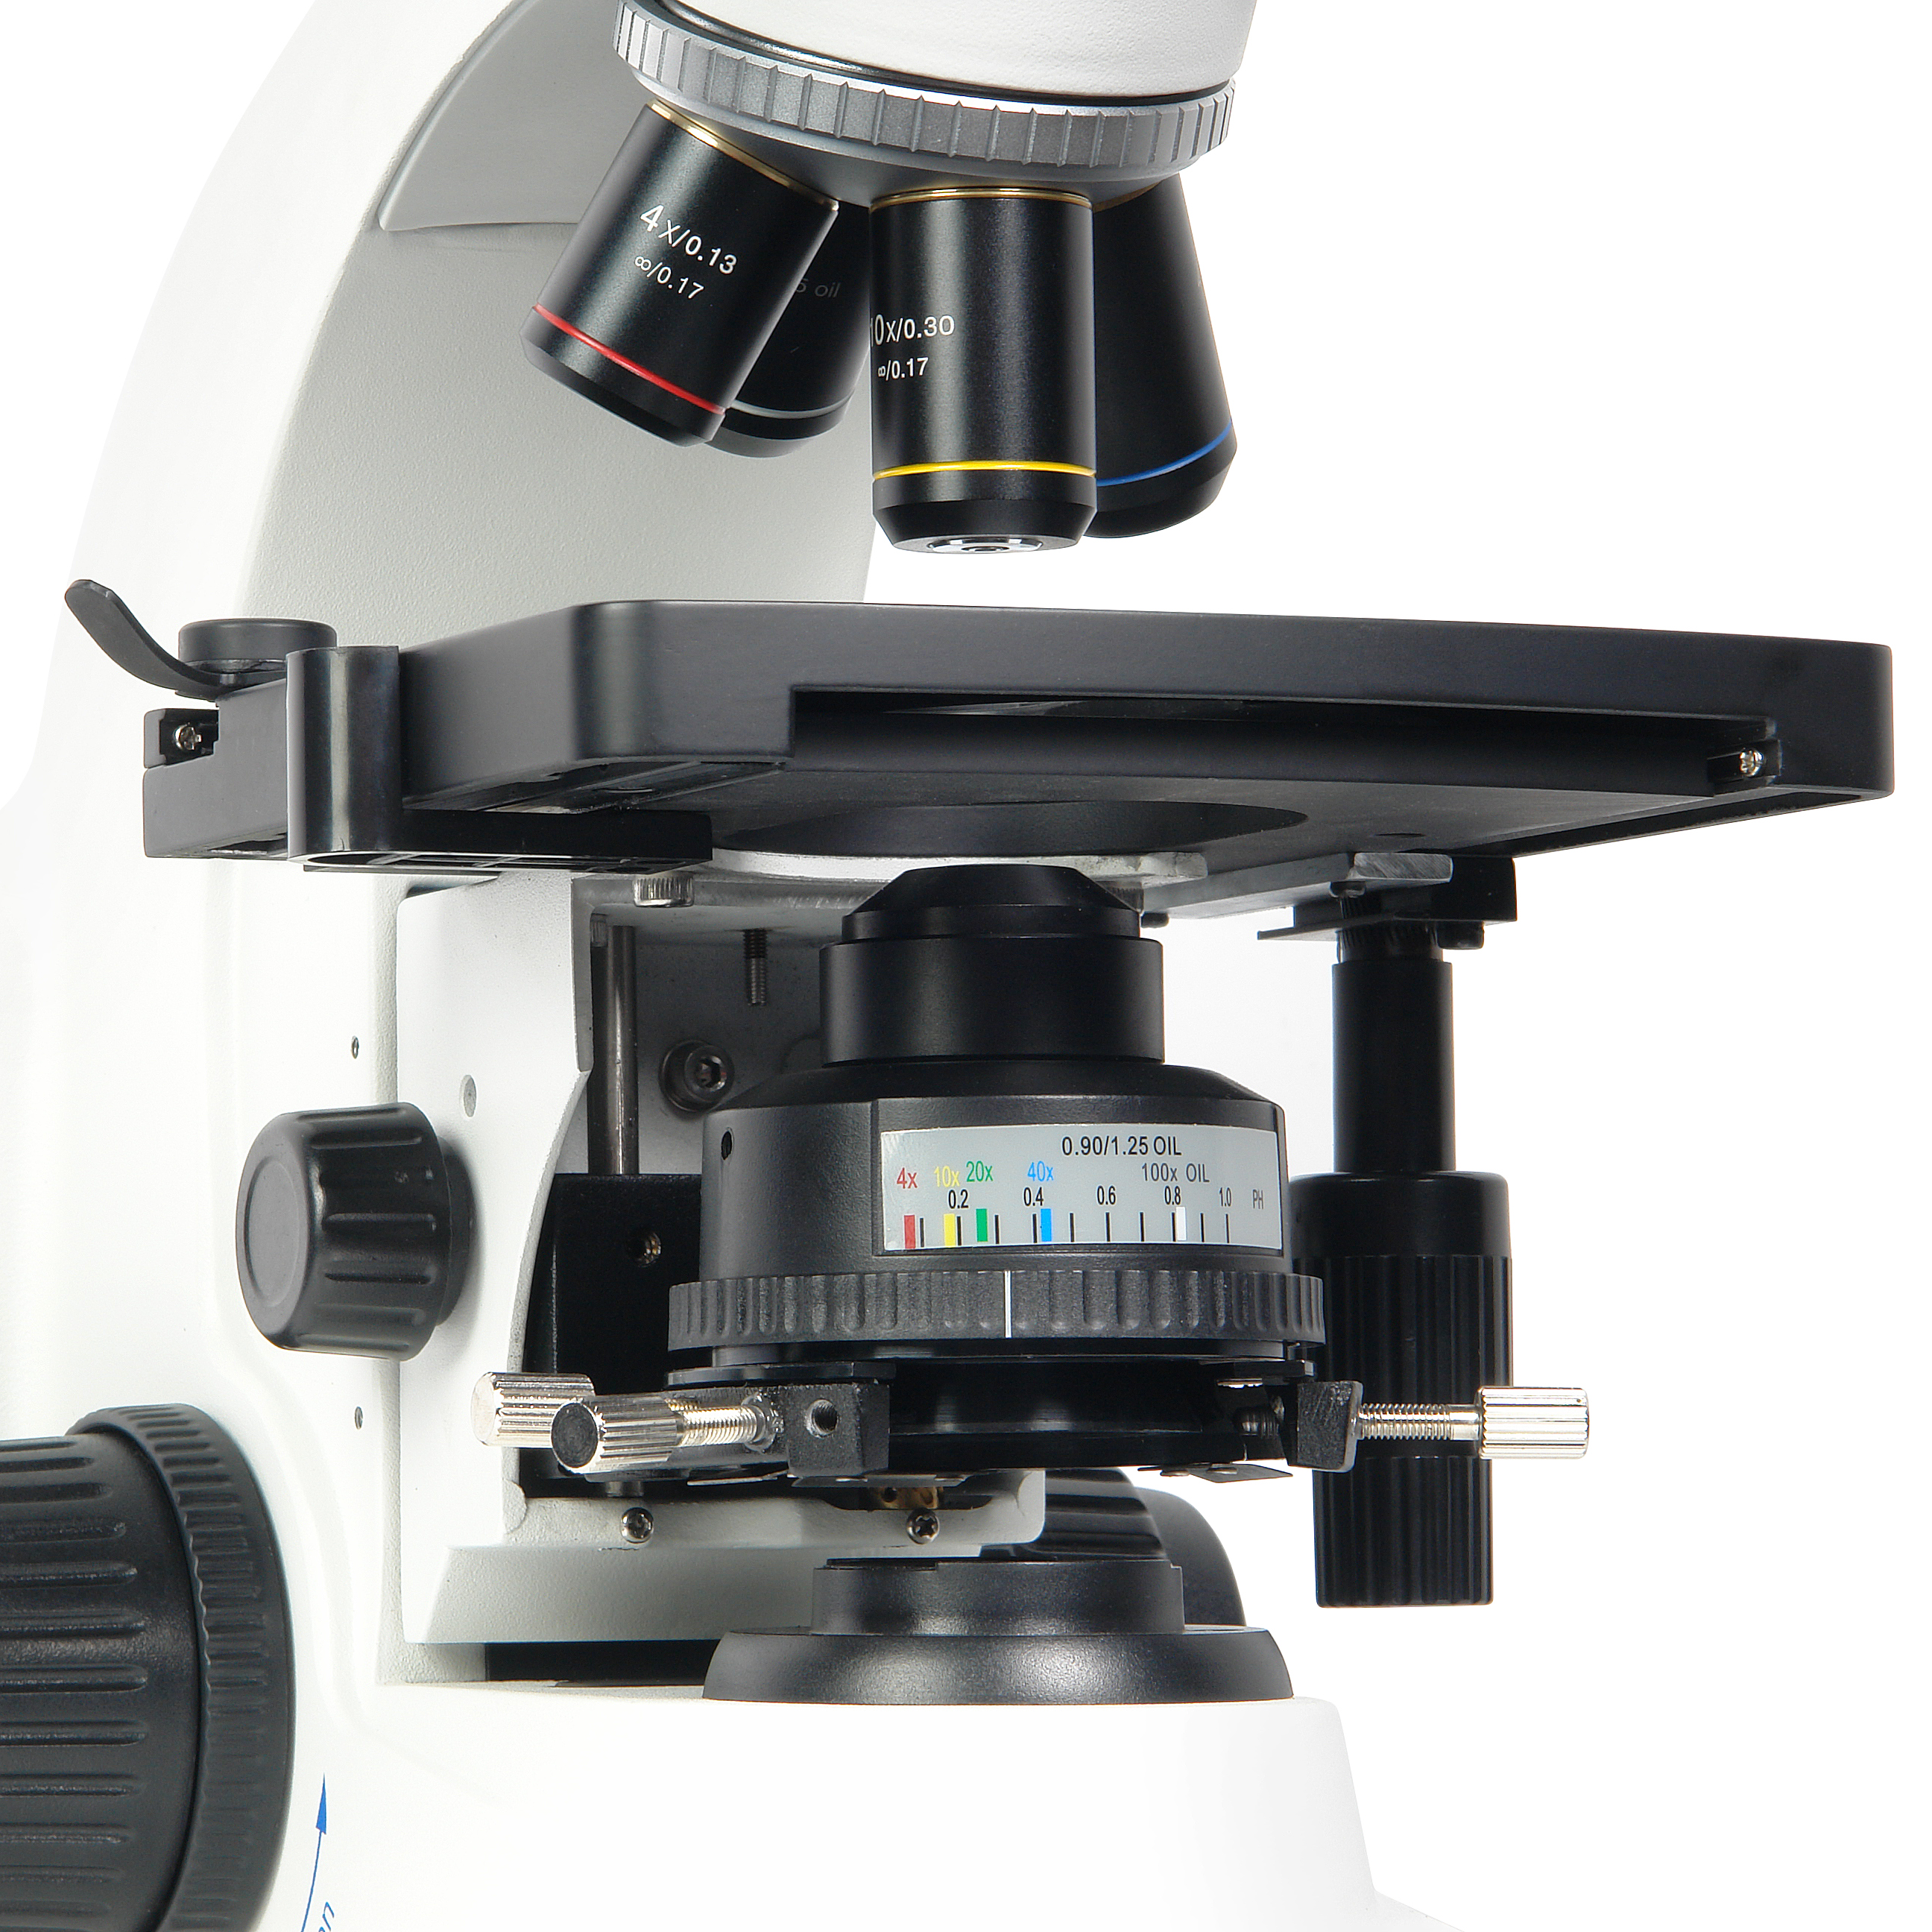 Микроскоп биологический Микромед 1 (3 LED inf.) купить по оптимальной цене,  доставка по России, гарантия качества